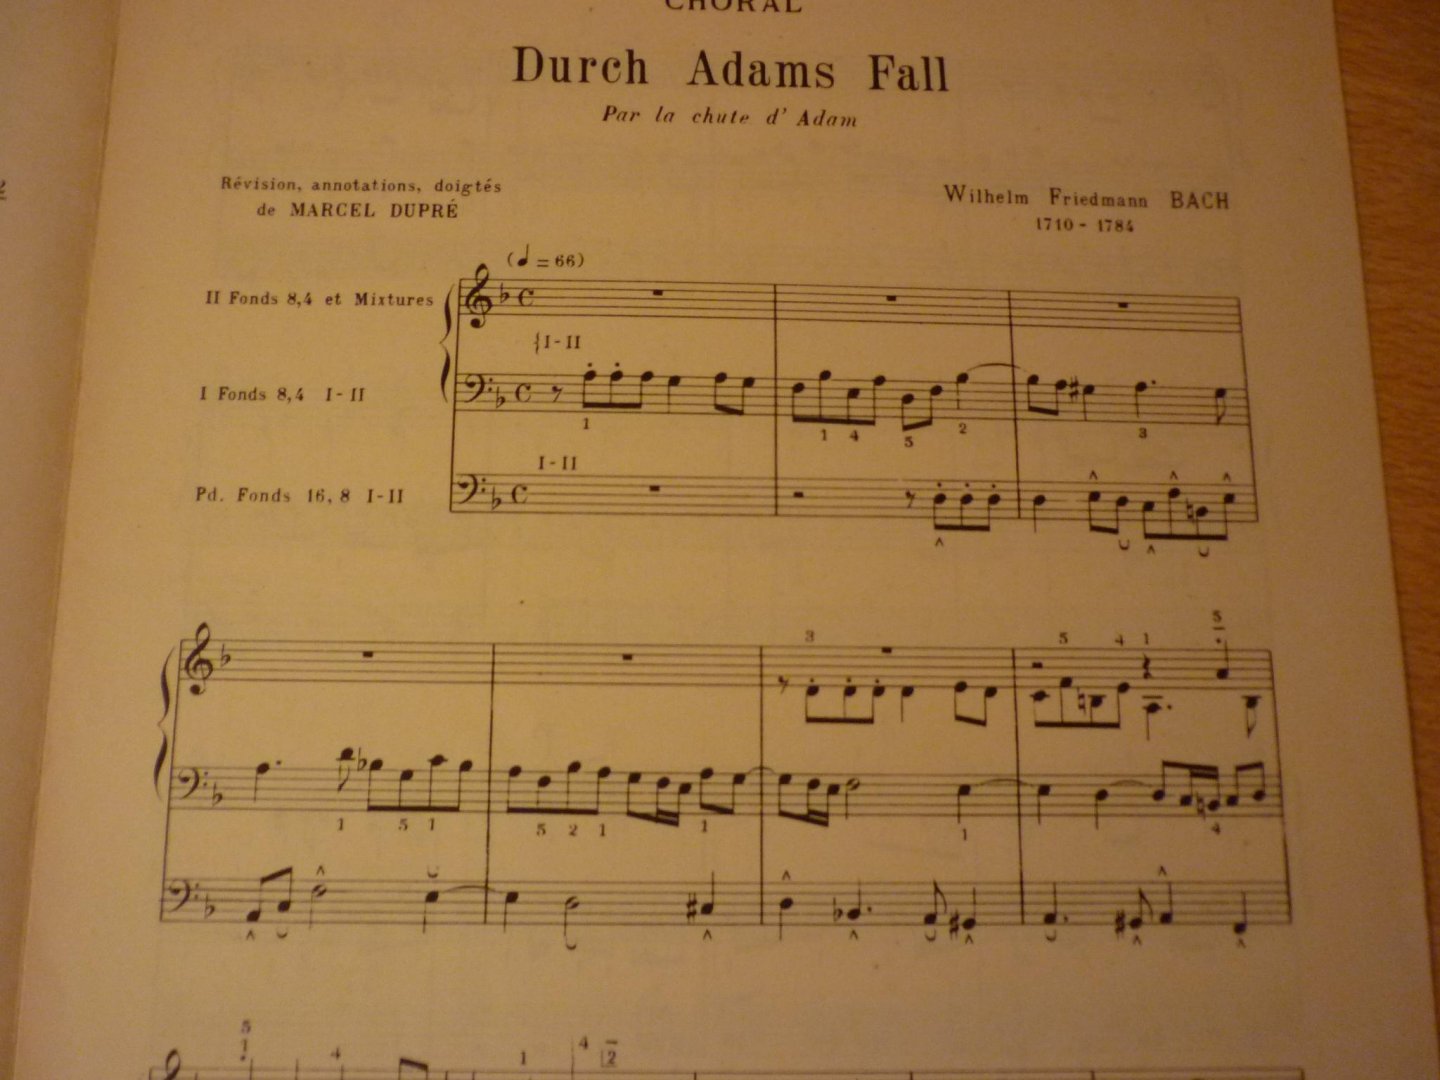 Bach; (Wilhelm-Frriedemann) 1710-1784; Dupré; Marcel - Bach; (Wilhelm-Frriedmann); Choral: Durch Adams Fall. (Par la chute d'Adam); Anthologie des Maitres Classiques de l'Orgue;